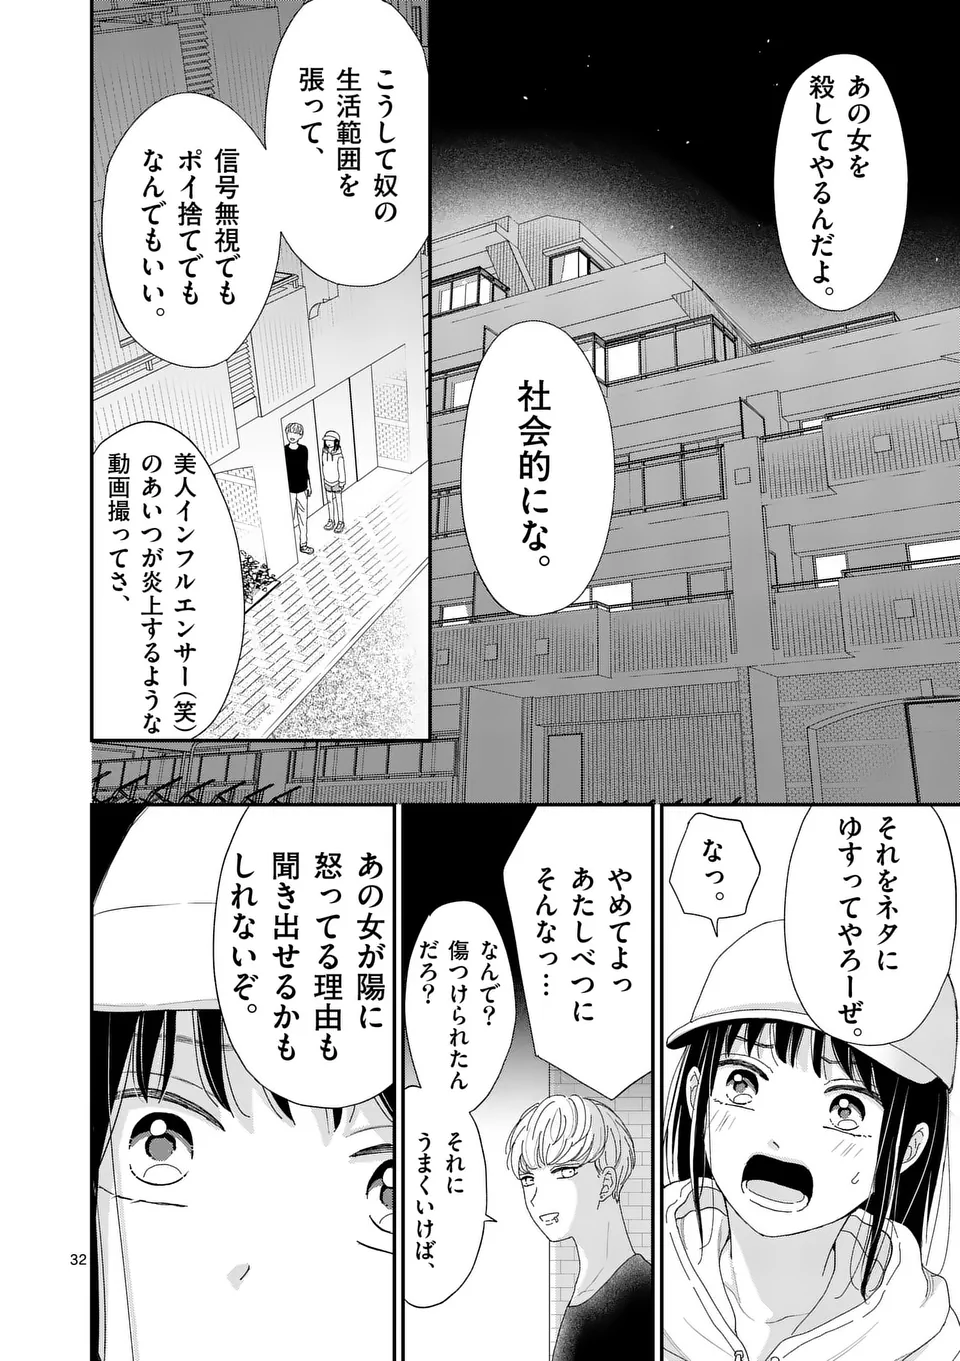 Atashi wo Ijimeta Kanojo no Ko - Chapter 1 - Page 32